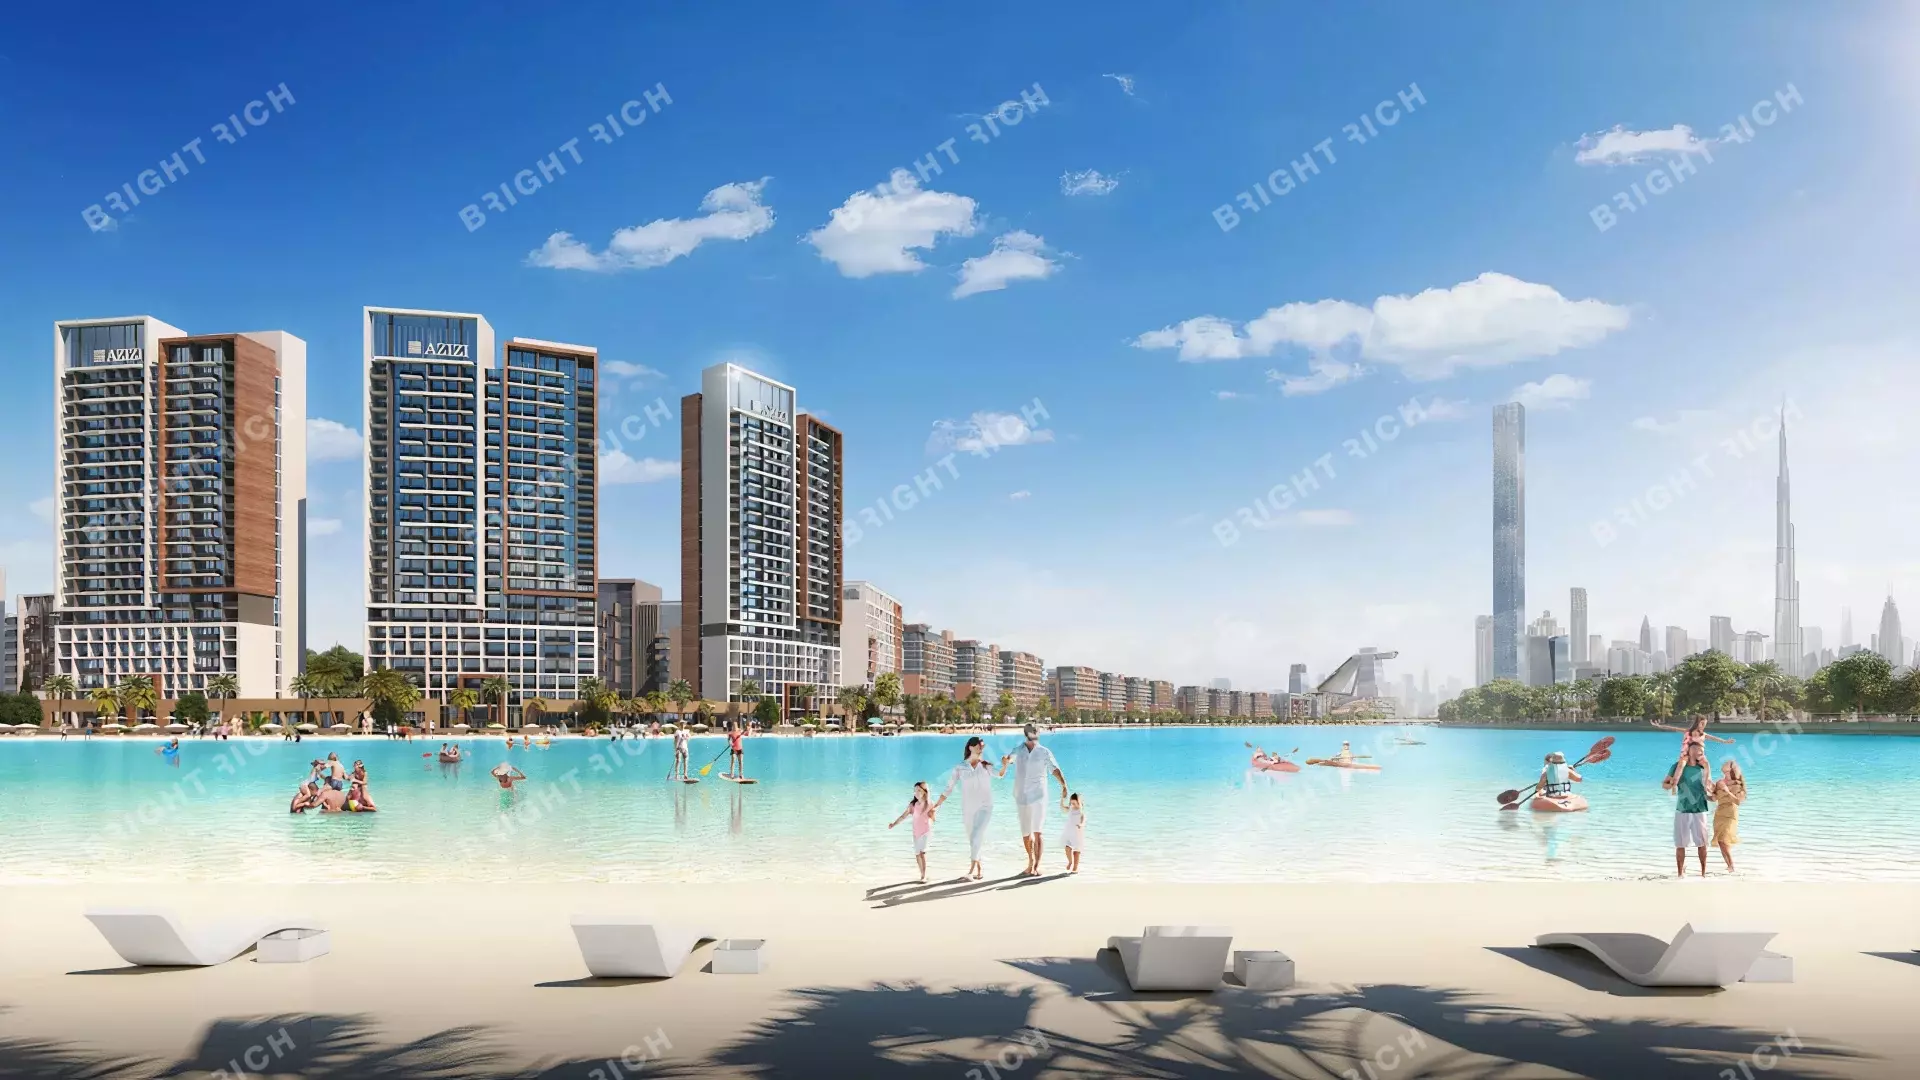 Azizi Riviera Building 31, apart complex in Dubai - 1